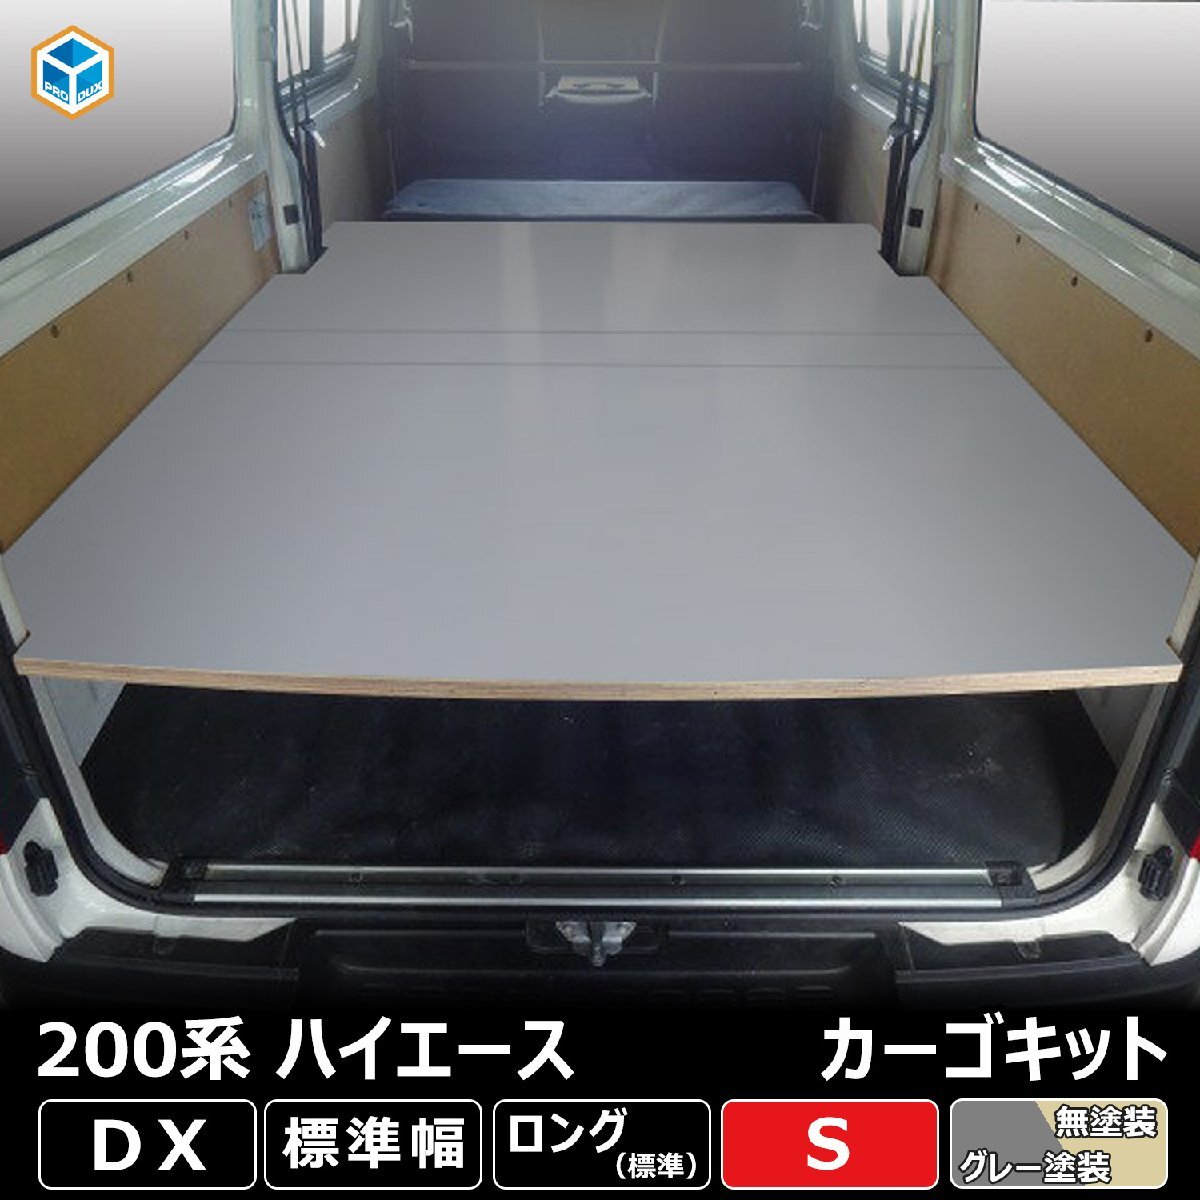 トヨタ 200系 ハイエース ロング DX カーゴキット S【グレー塗装×リヤヒーターなし】| ベッドキット ベッド ベットキット キット 棚 板_画像1